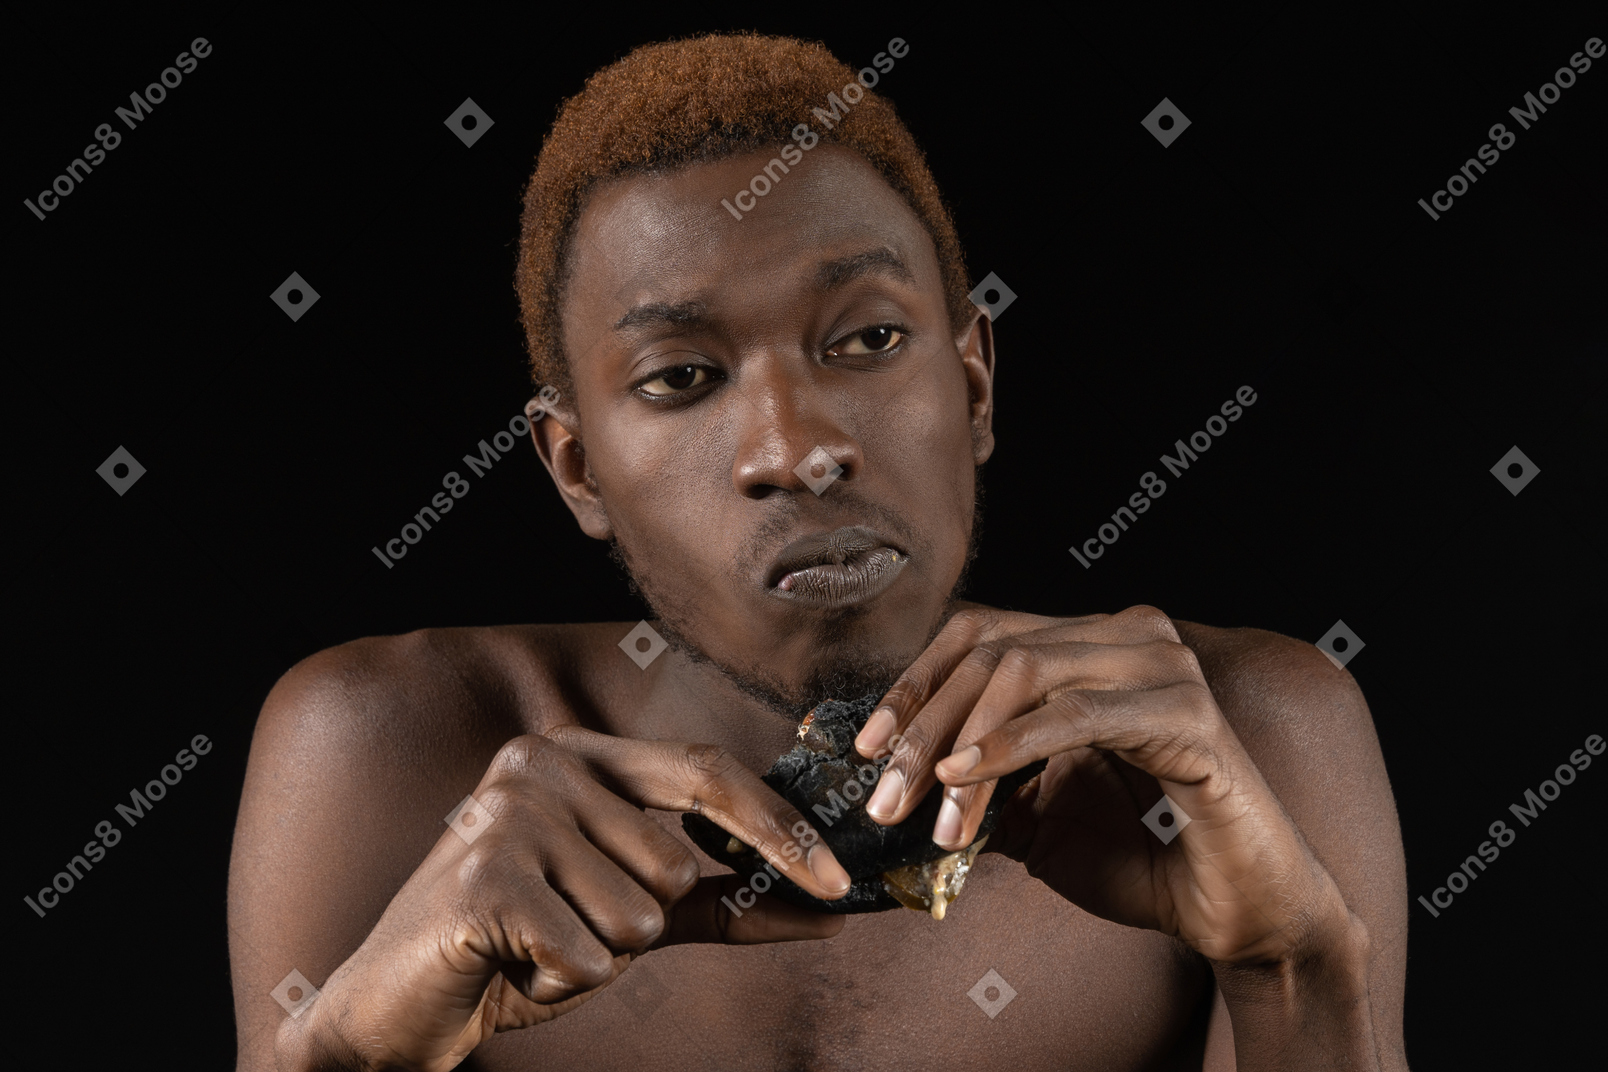 Vorderansicht eines nachdenklichen jungen afro-mannes, der einen burger isst